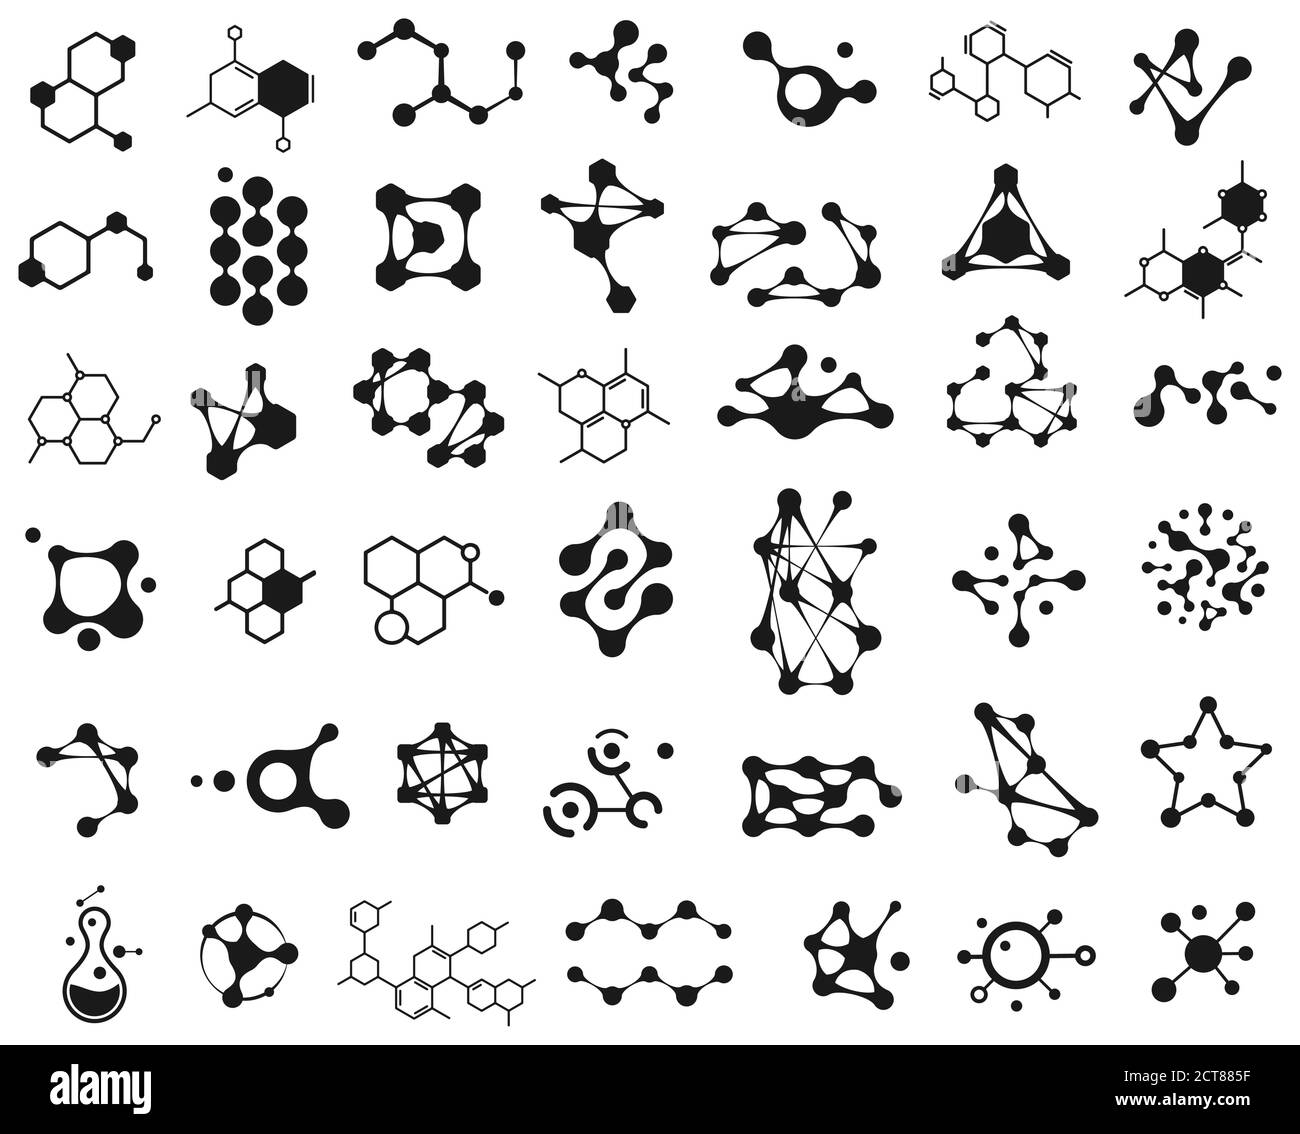 Symbole für verbundene Moleküle. Logo der molekularen Struktur. Verbindung Wissenschaft Molekül, Chemie Atom, chemische abstrakte molekulare Struktur Illustration Stock Vektor